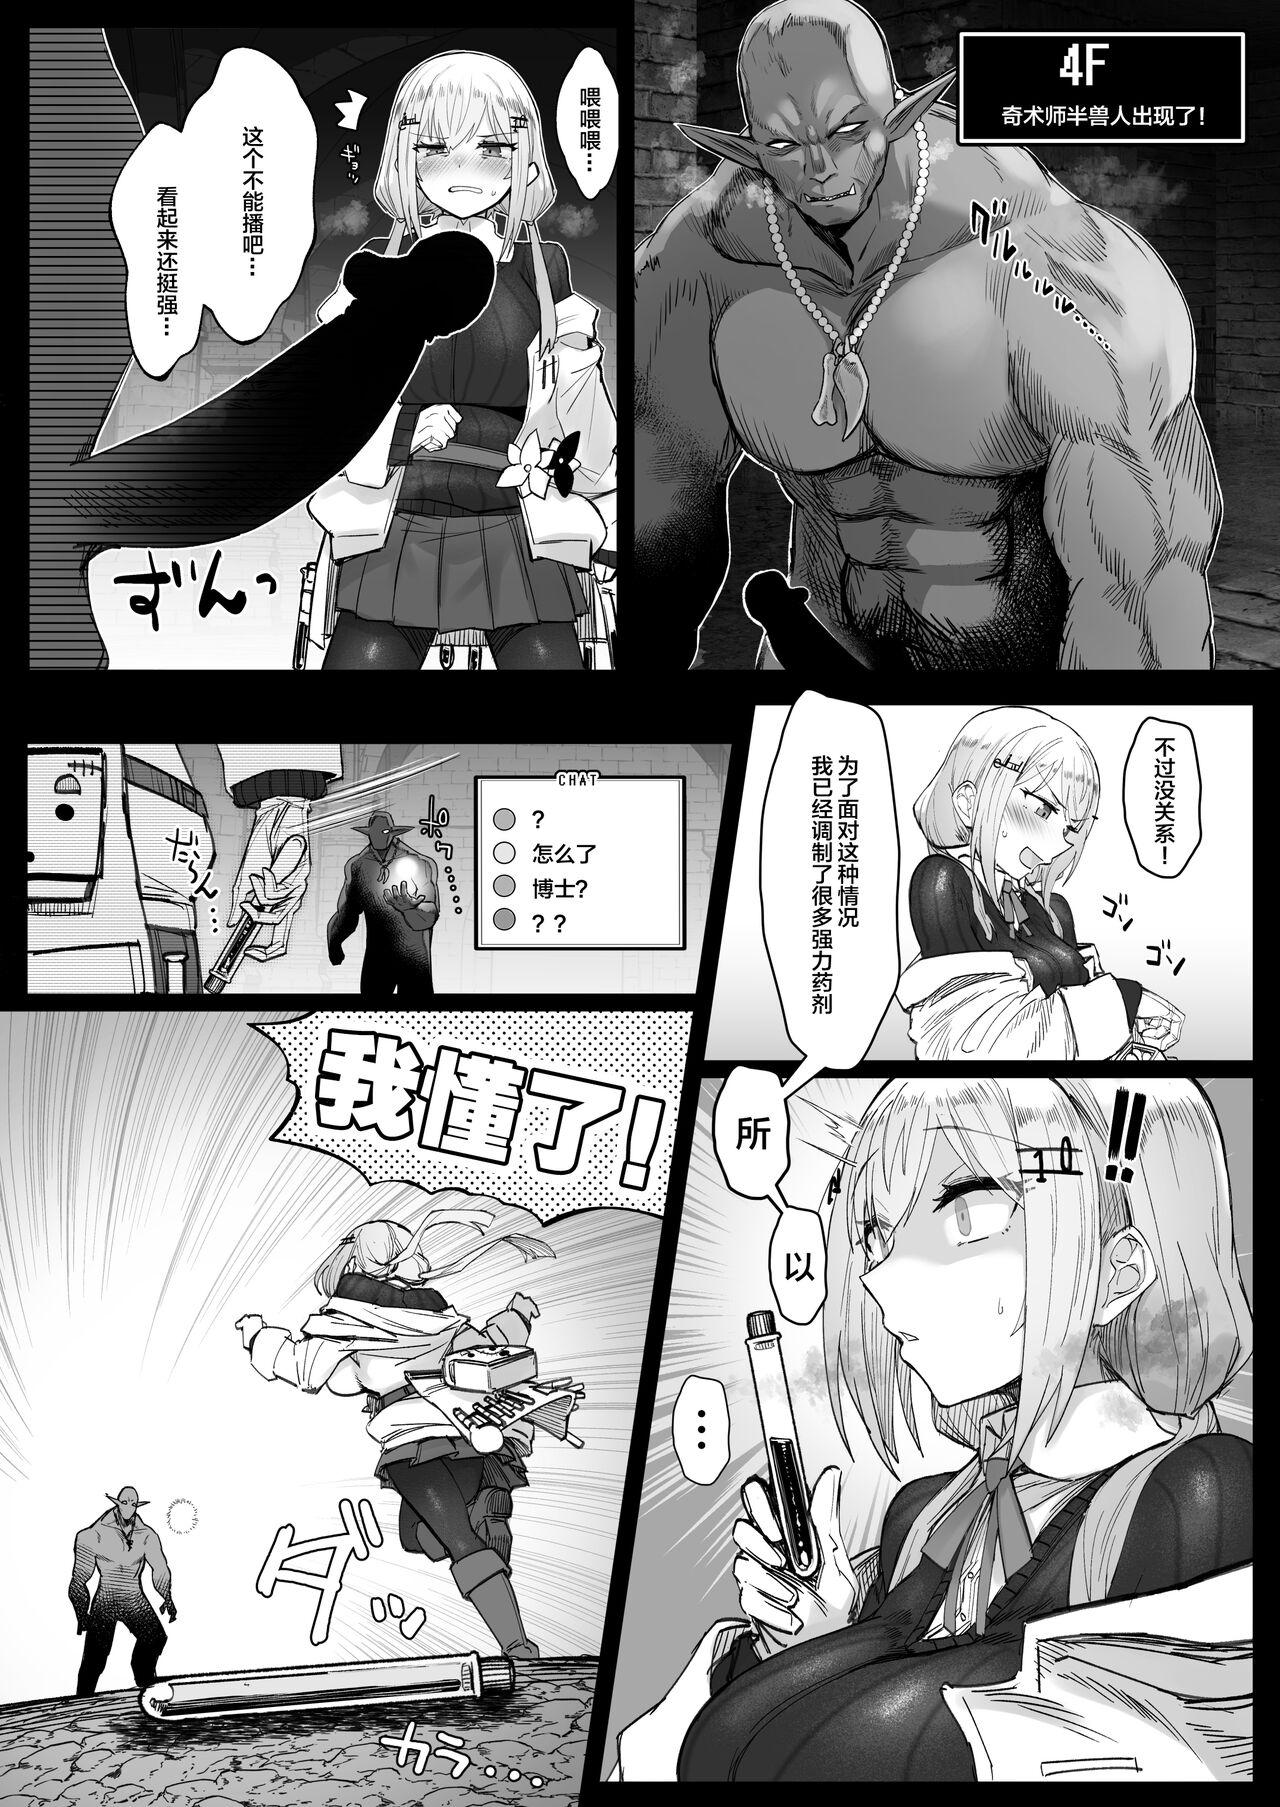 Gayfuck Niji Ero Trap Dungeon Bu 3 - Nijisanji Cock Sucking - Page 8